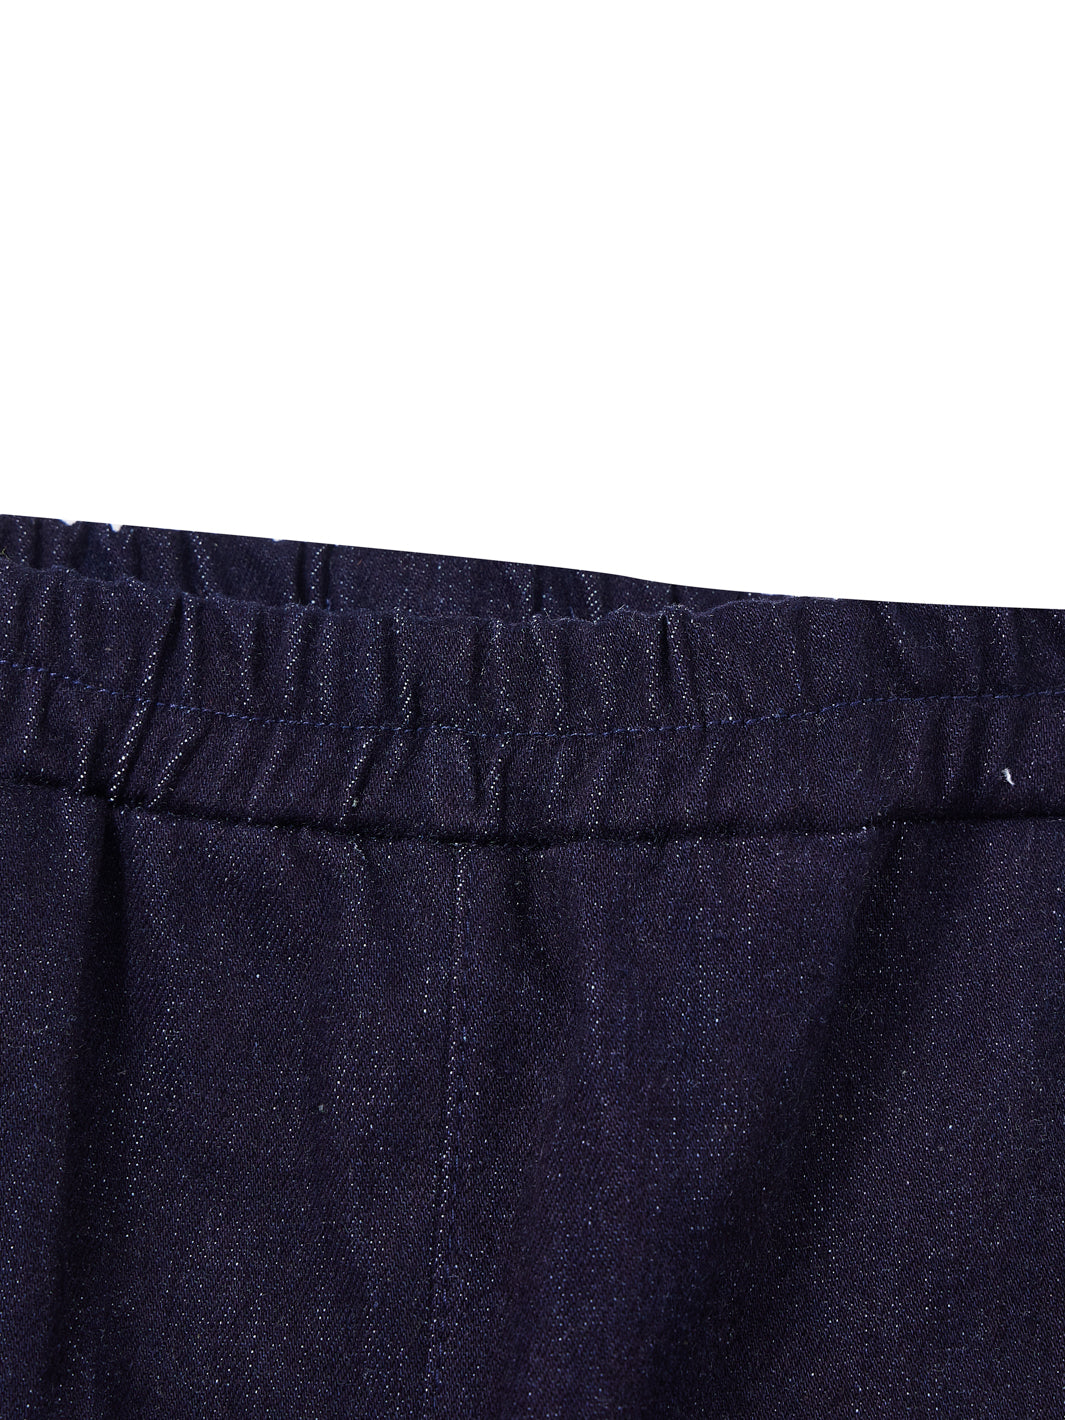 Denim Shorts Pants - Navy Denim